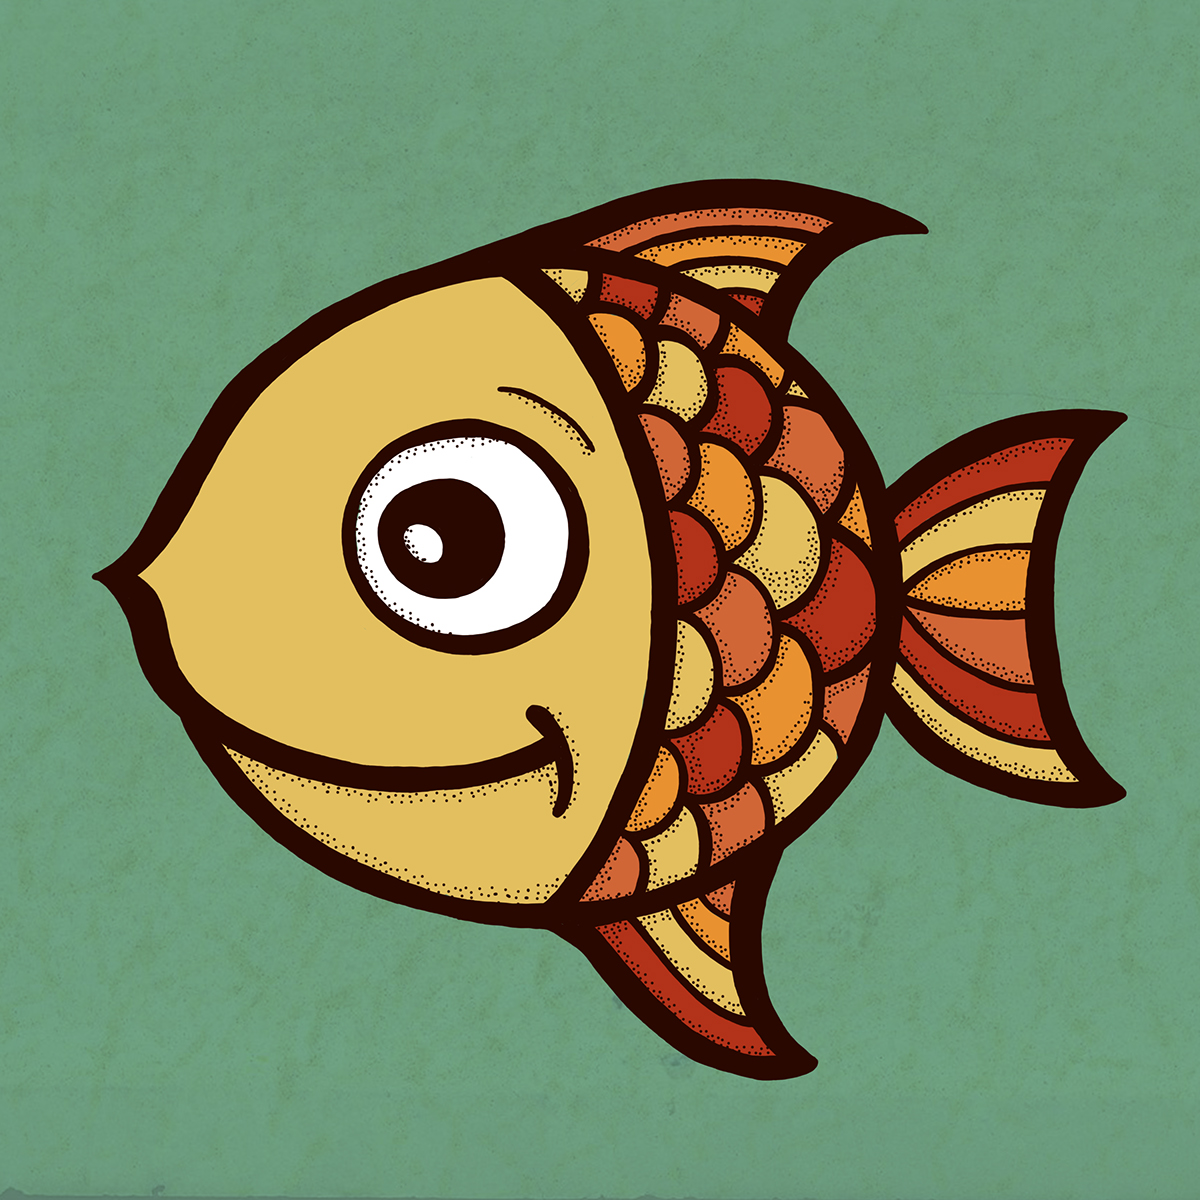 poisson fish illustration pour enfant pointillé colore trait orange Chaleureux texture yellow jaune OEIL eye